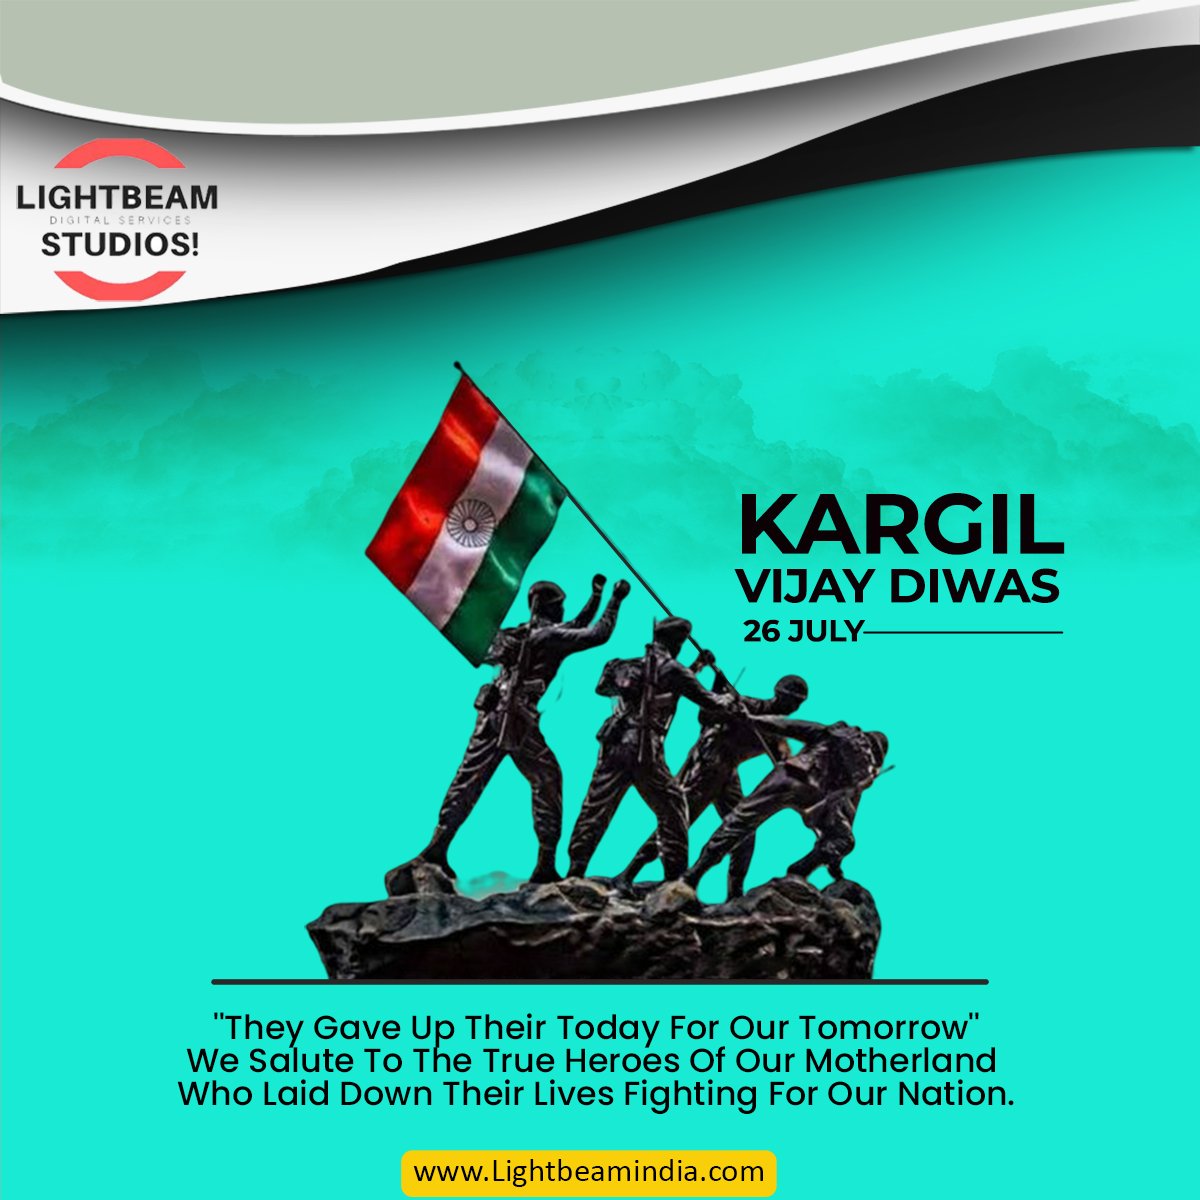 We Salute To True Heroes Of Our Motherland.
Kargil Vijay Diwas 🙏🌹
.
.
#Lightbeamstudious #kargilvijaydiwas2022 #captainvikrambatra #oprationvijay #kargilwar #kargil1999 #indianarmy #indianairforce #indainnavy #Haarkaamdeshkenaam #jaihind #Digital #Instagram